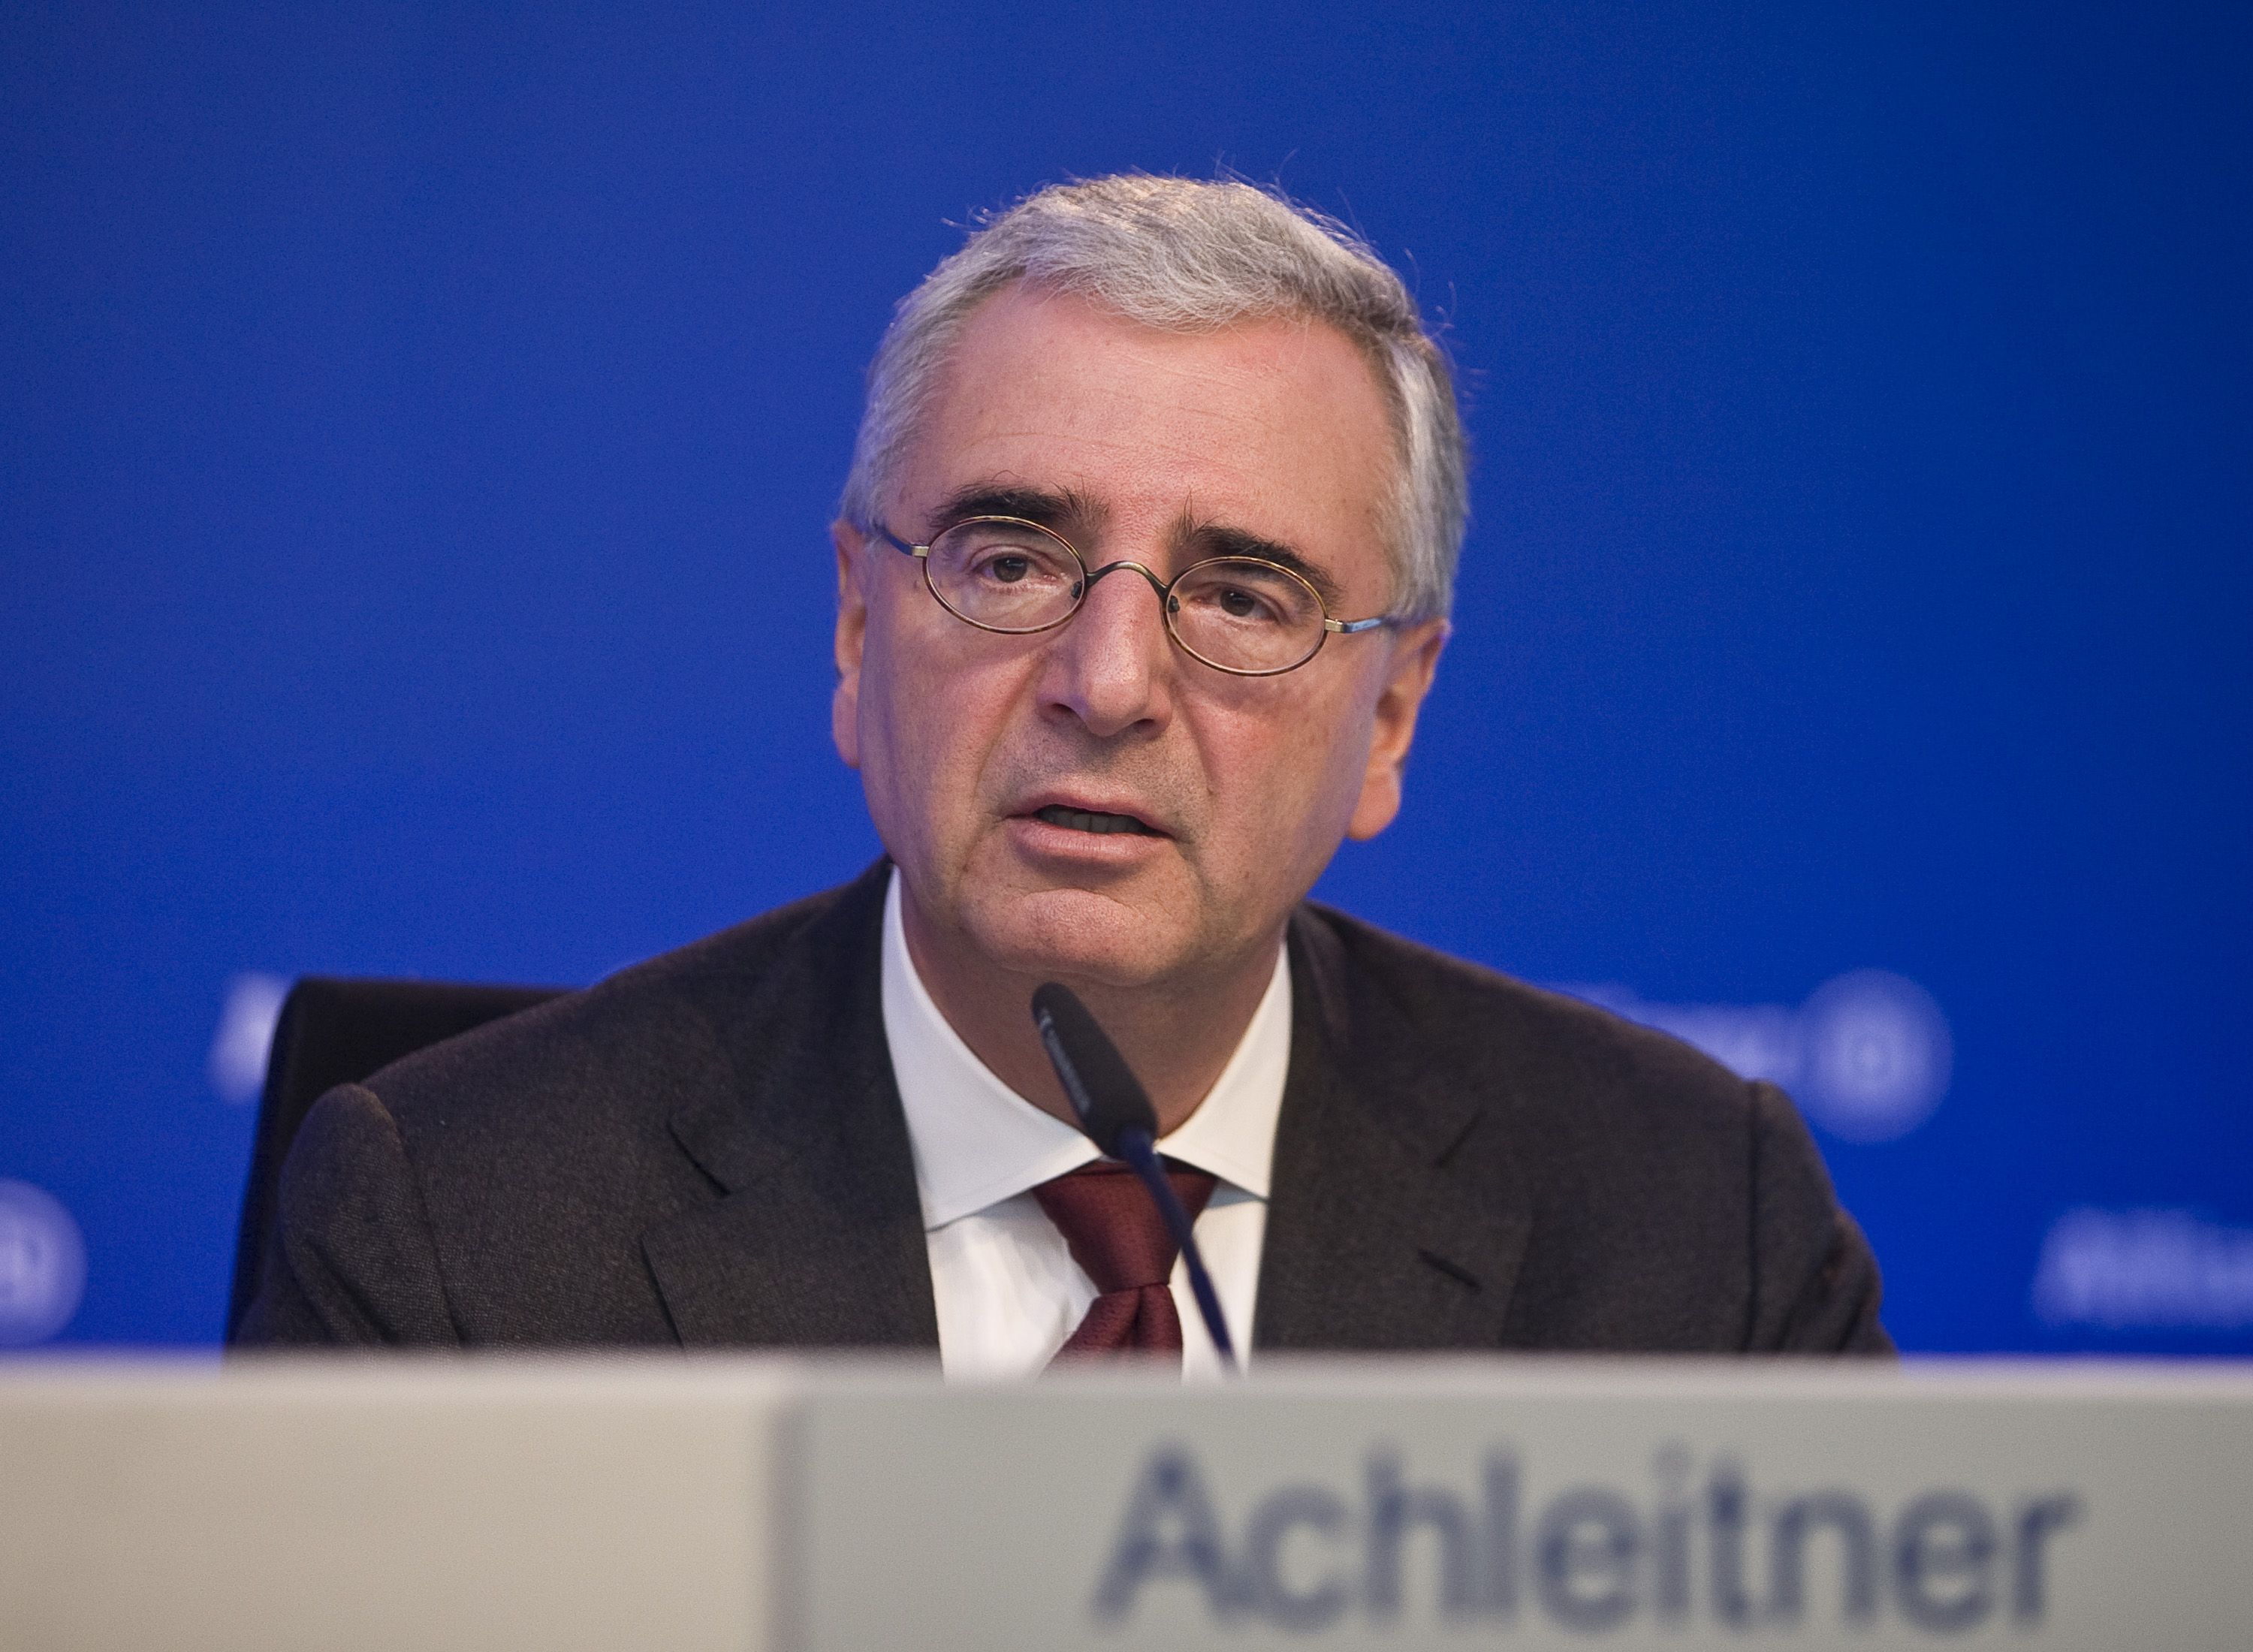 Allianz SE board member Paul Achleitner